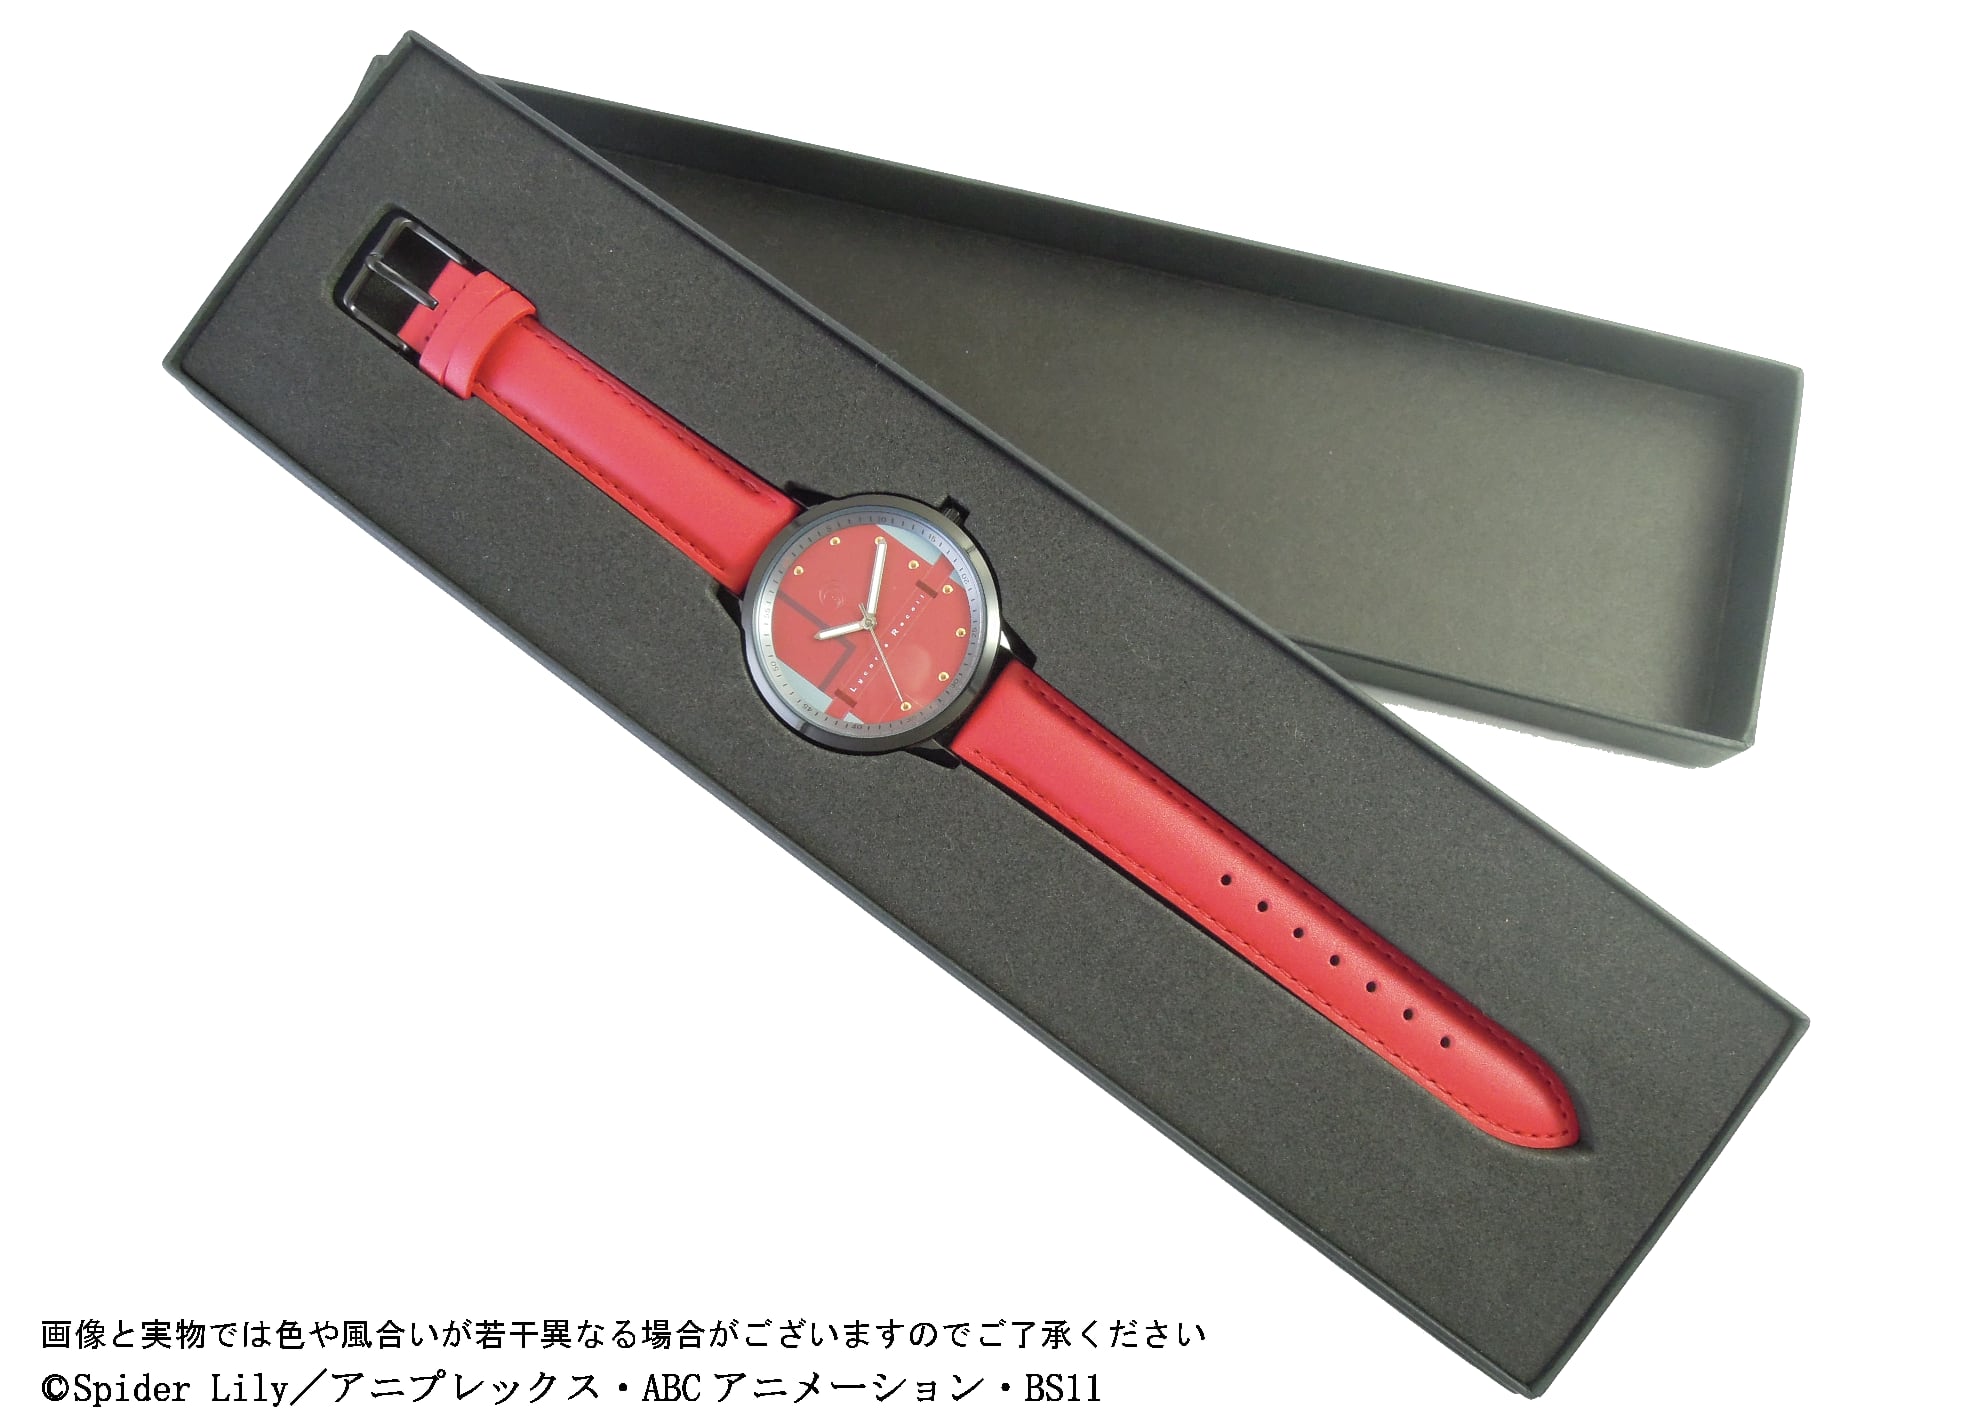 リコリス・リコイル 錦木千束(DA 1st)モデル腕時計 / カラー：レッド